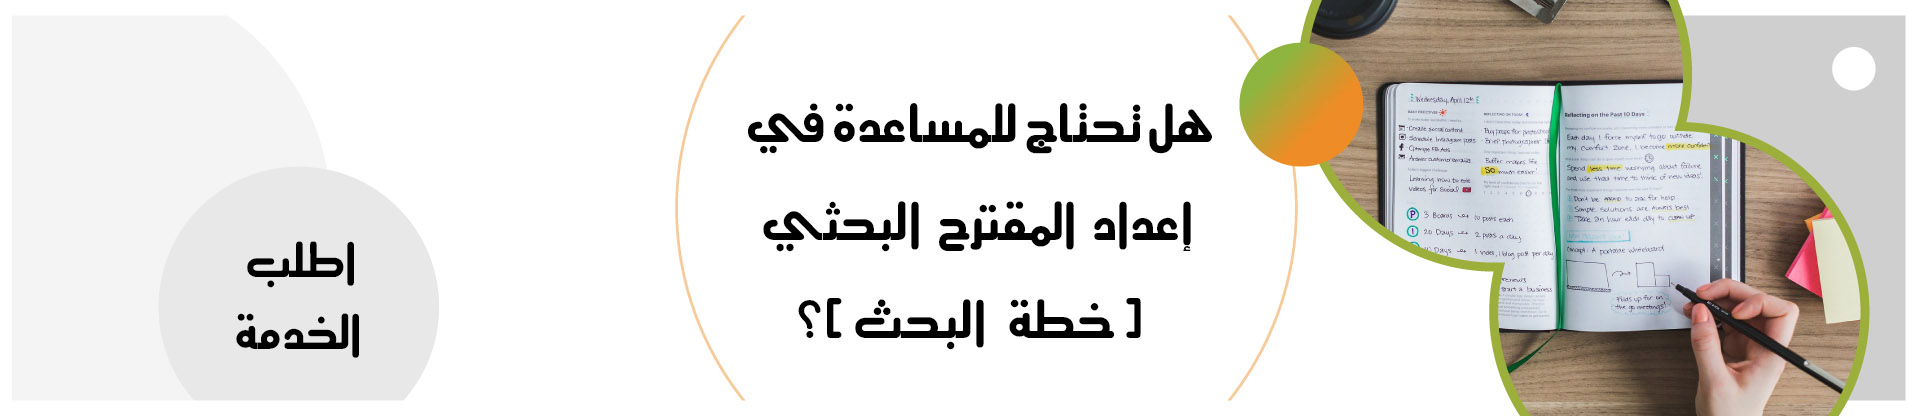 رسائل ماجستير رسائل دكتوراه في اللغة العربية Pdf